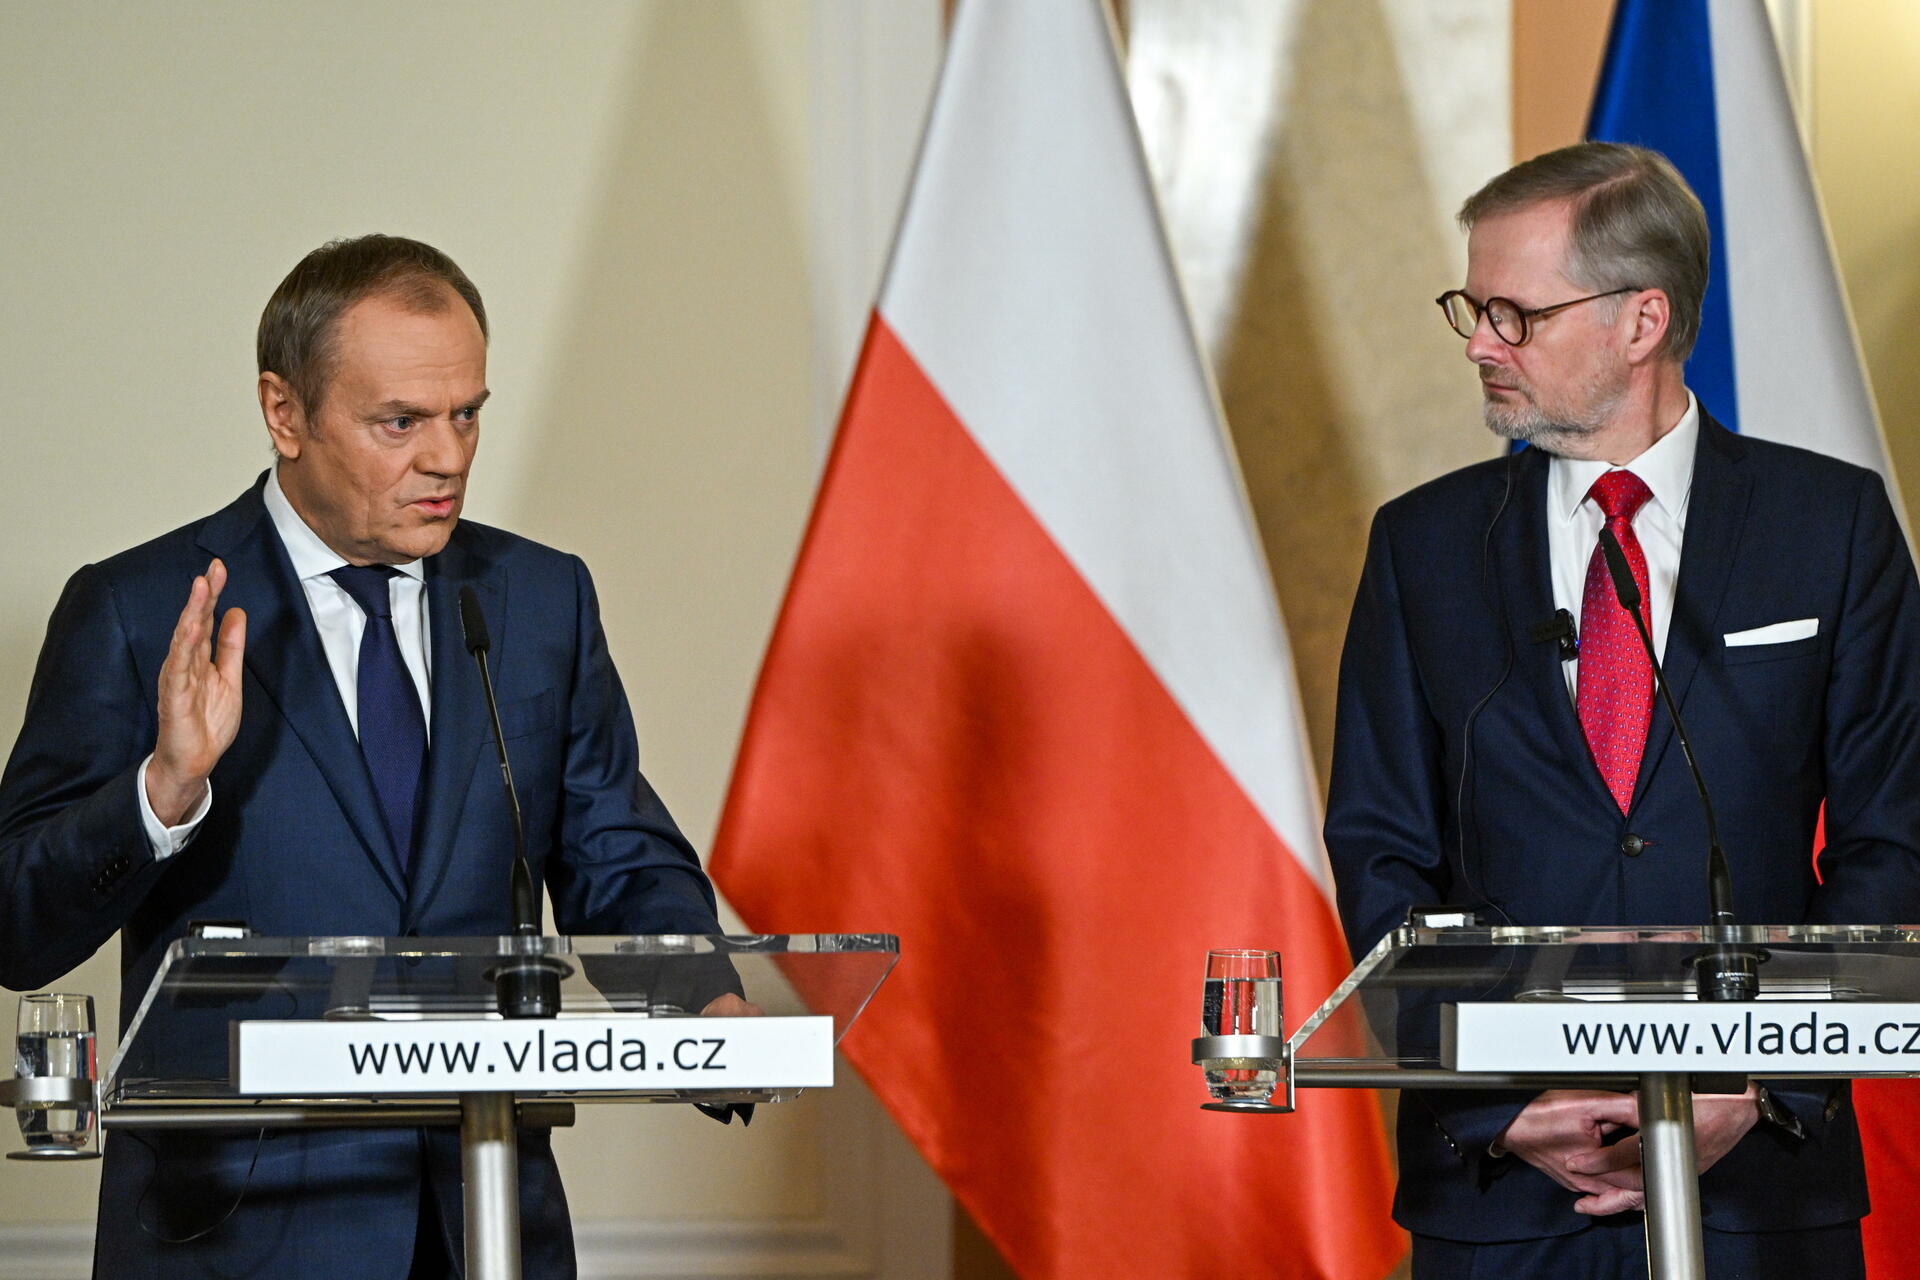  Gobiernos de Polonia y la República Checa 